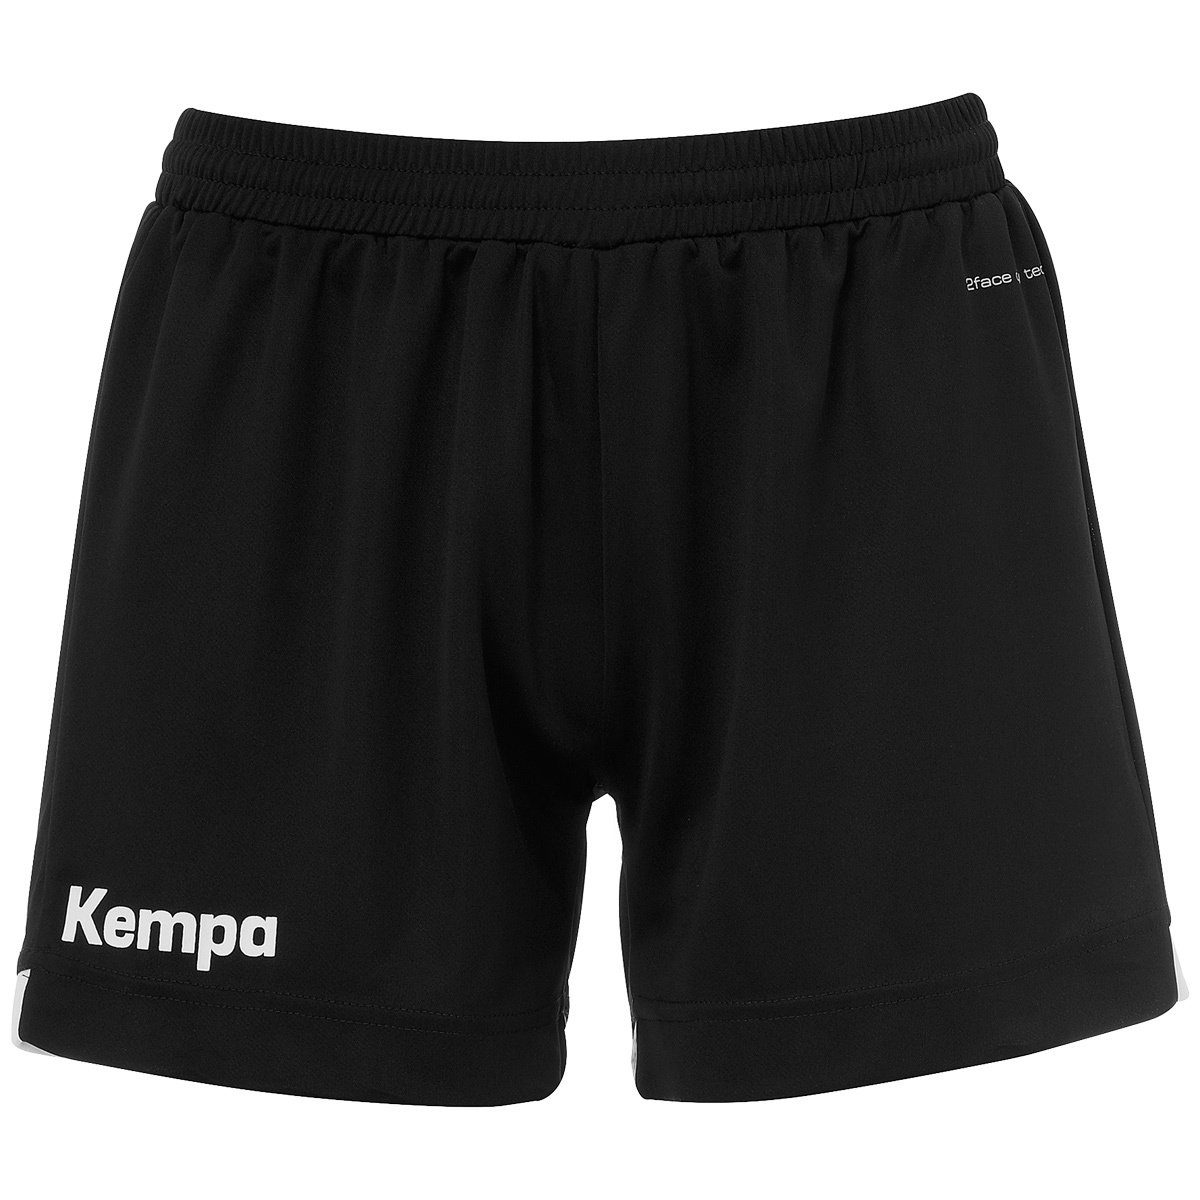 Kempa schwarz/weiß WOMEN PLAYER Kempa Shorts Shorts